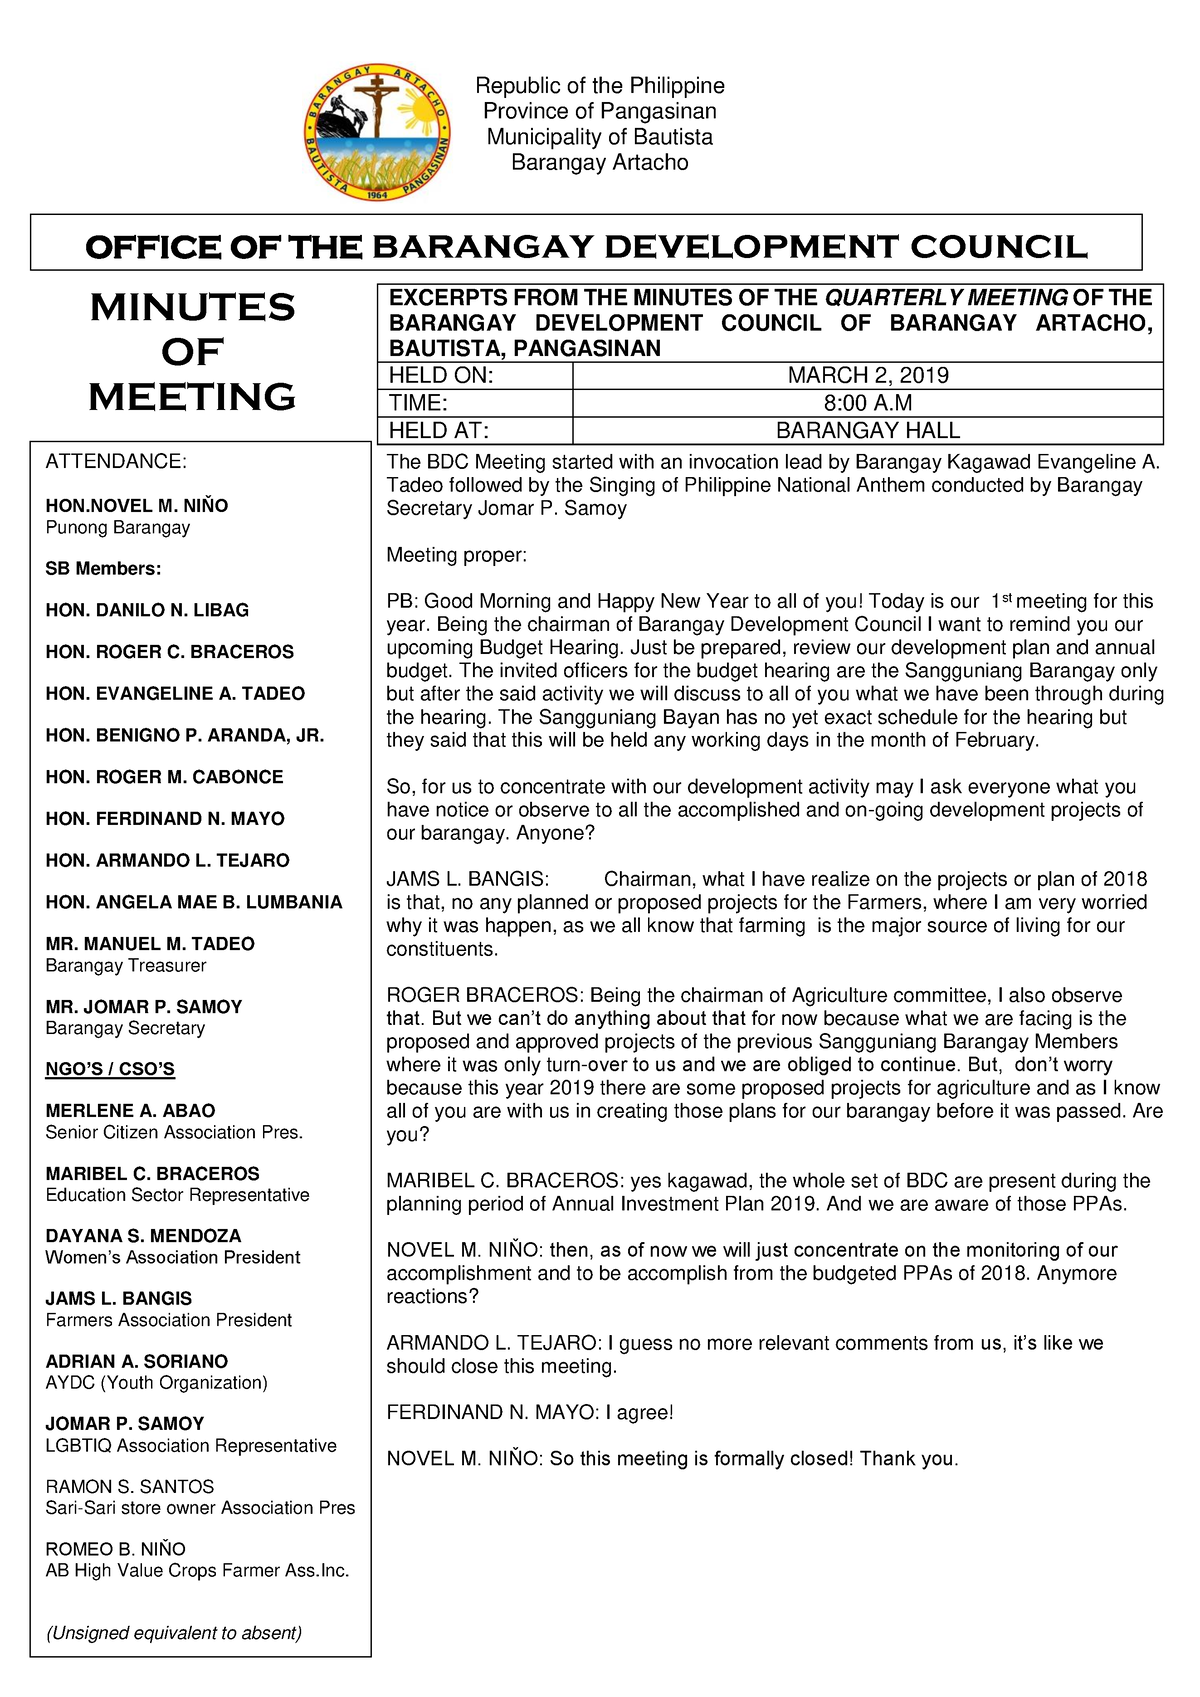 424805928 Bdc Minutes of Meeting Province of Pangasinan Municipality